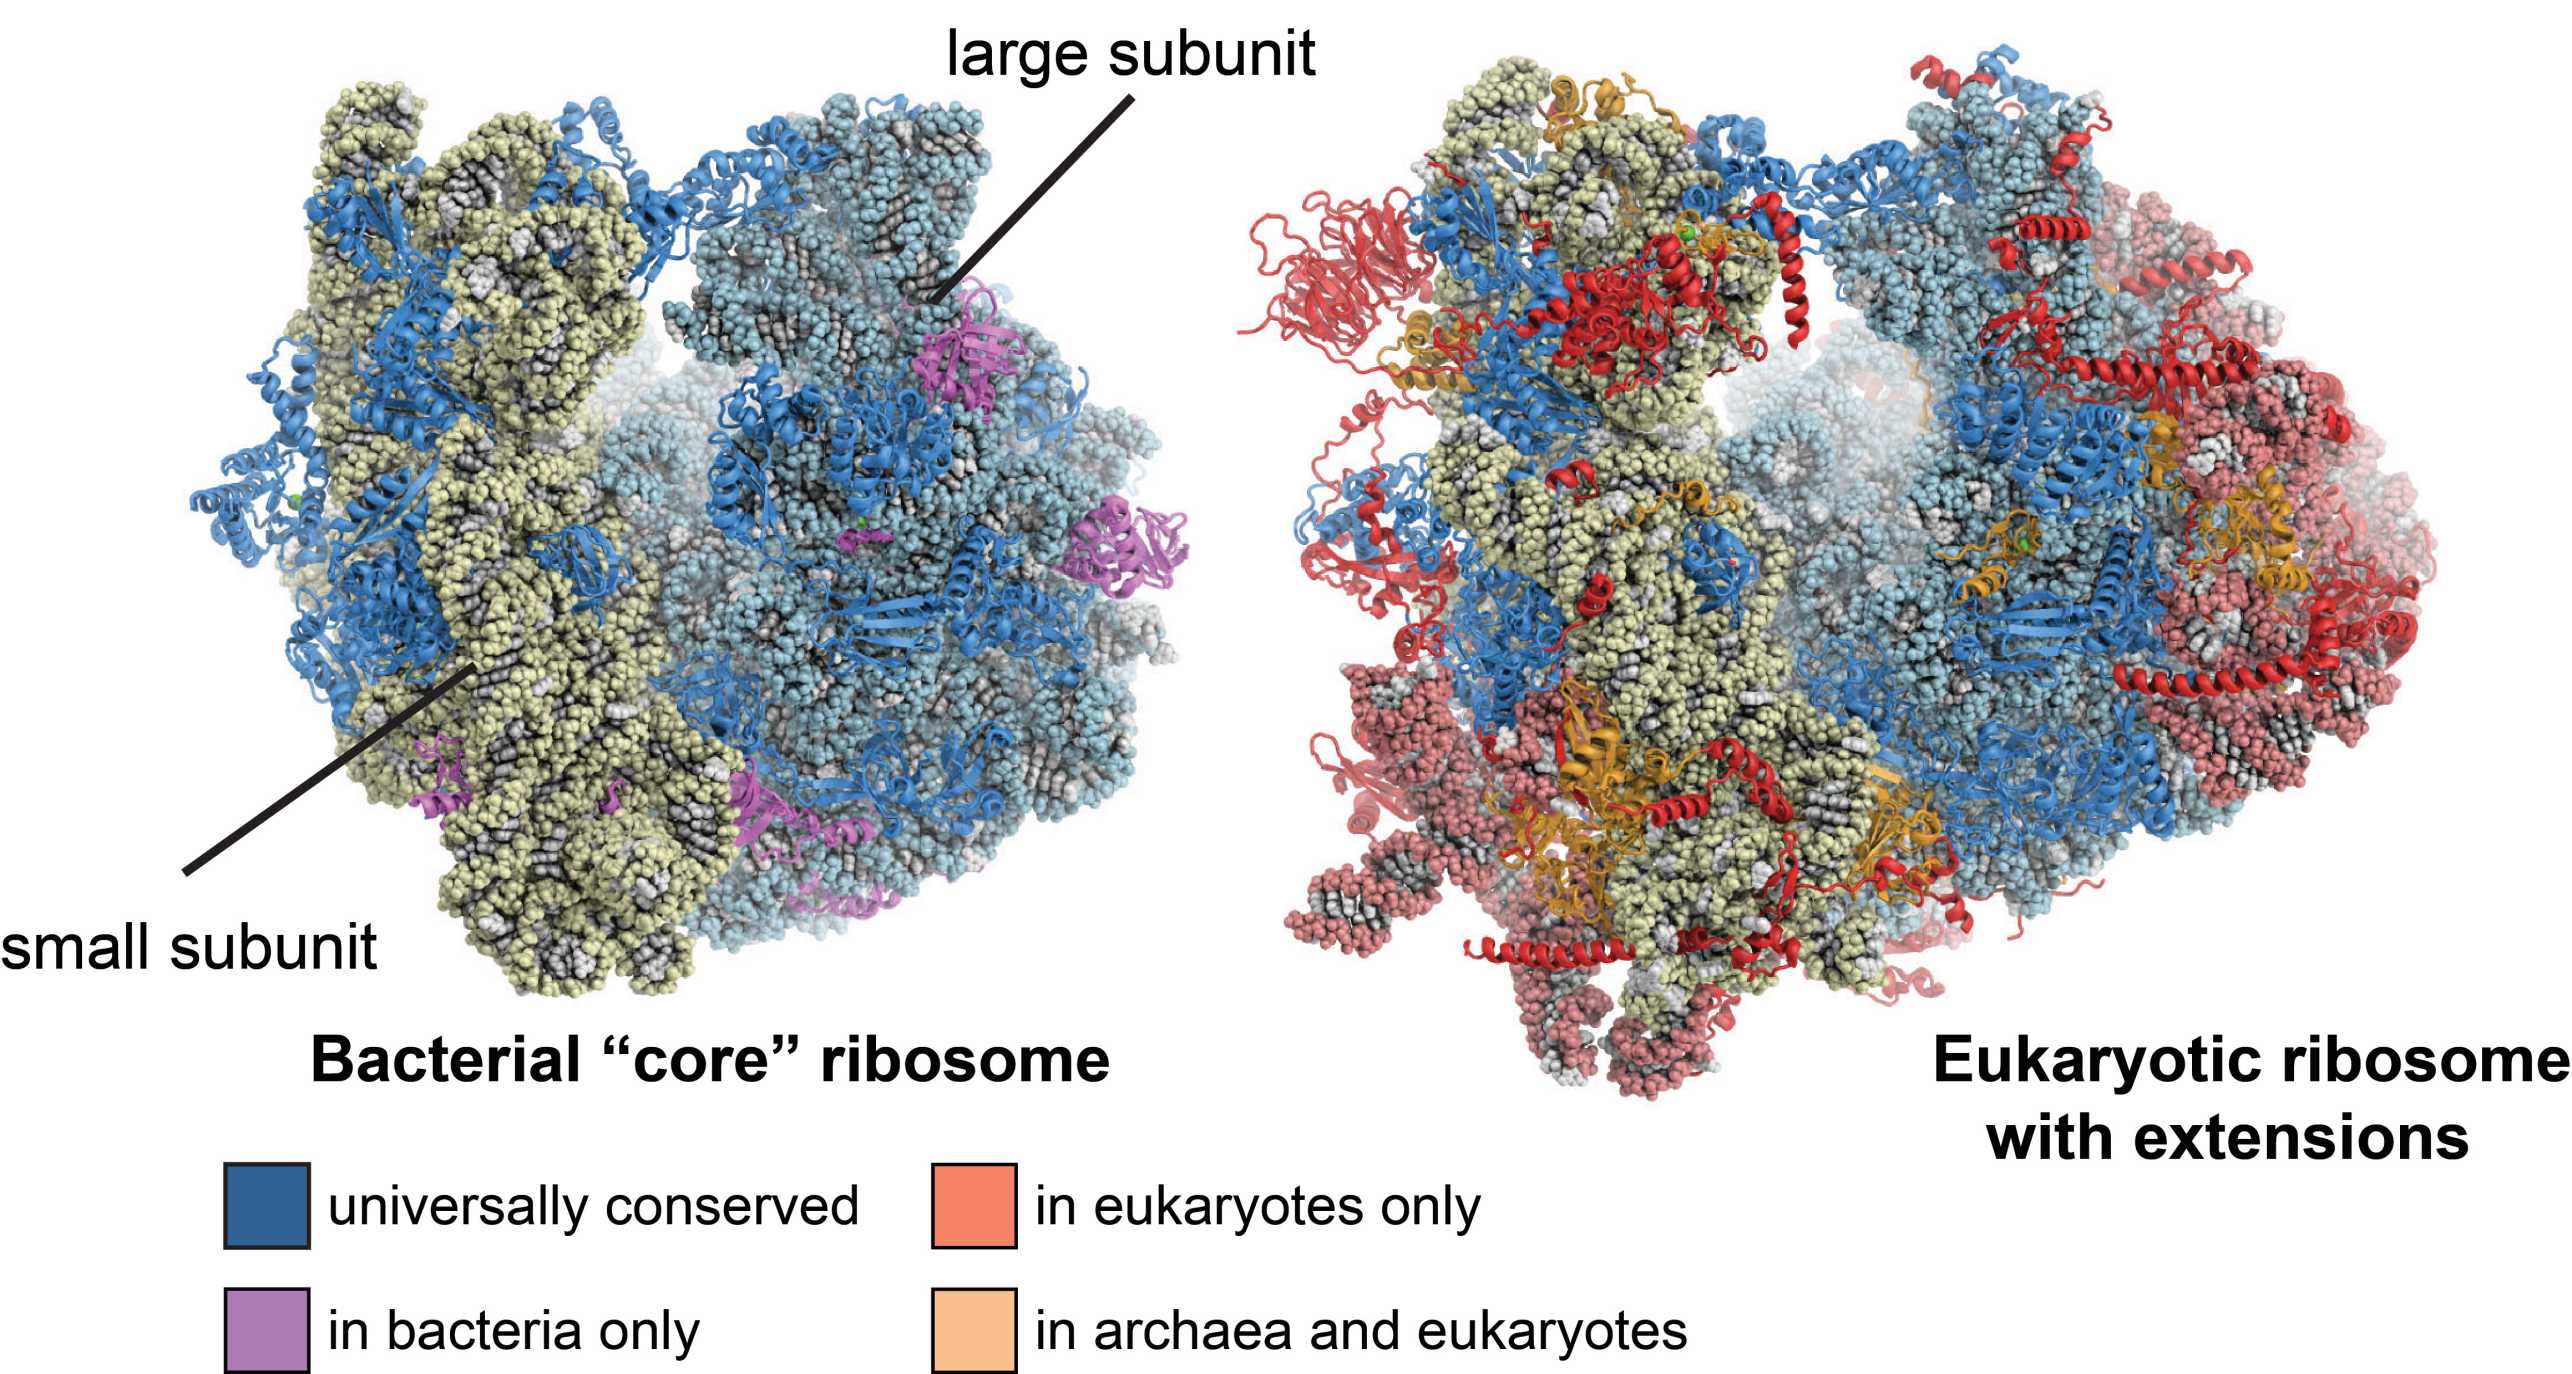 Eukaryotic ribosomes